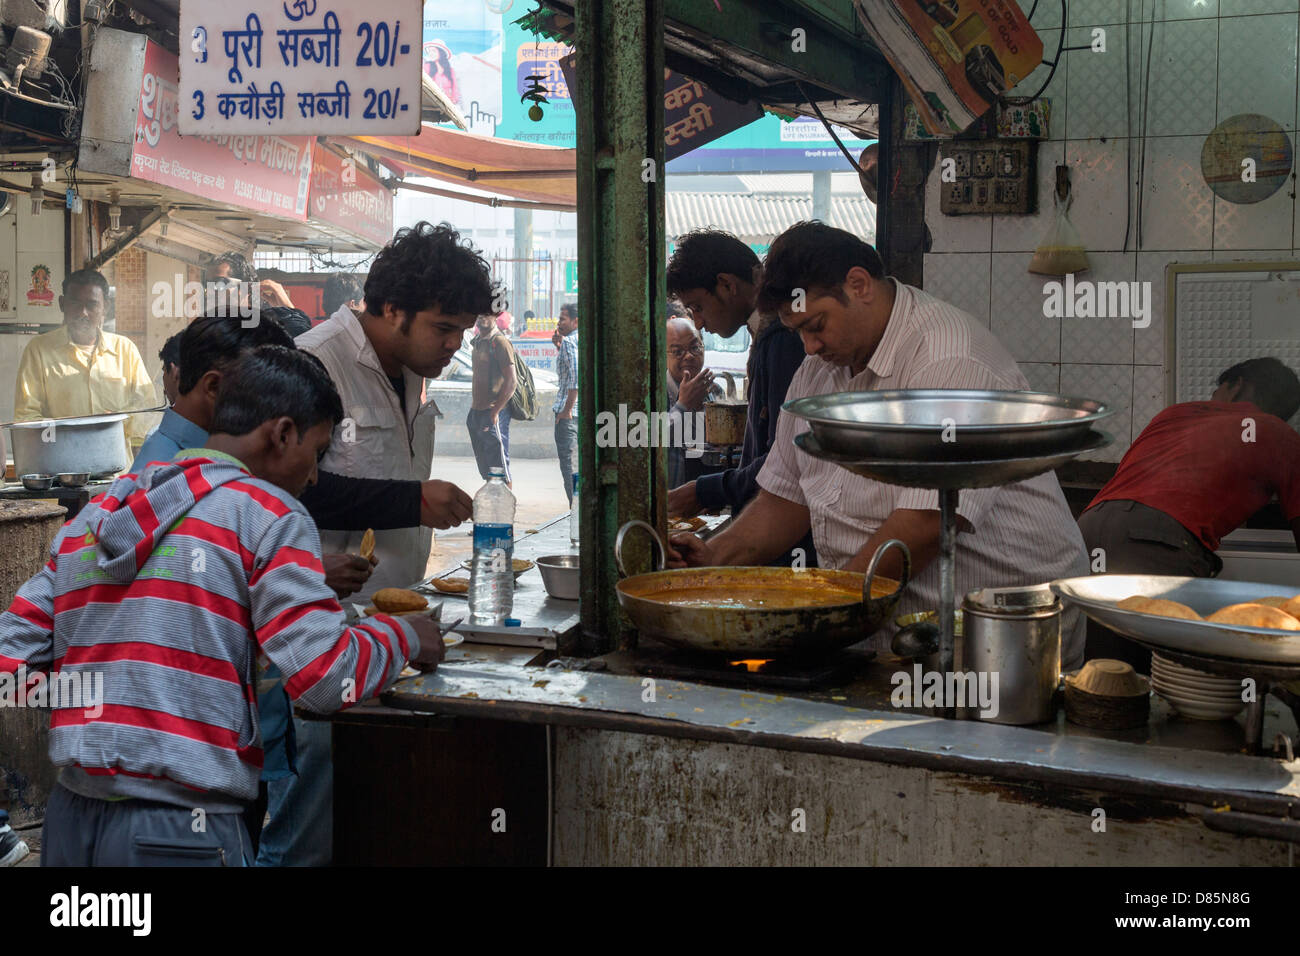 L'Inde, Uttar Pradesh, New Delhi, retour de scène de rue près de New Delhi Railway Station Banque D'Images